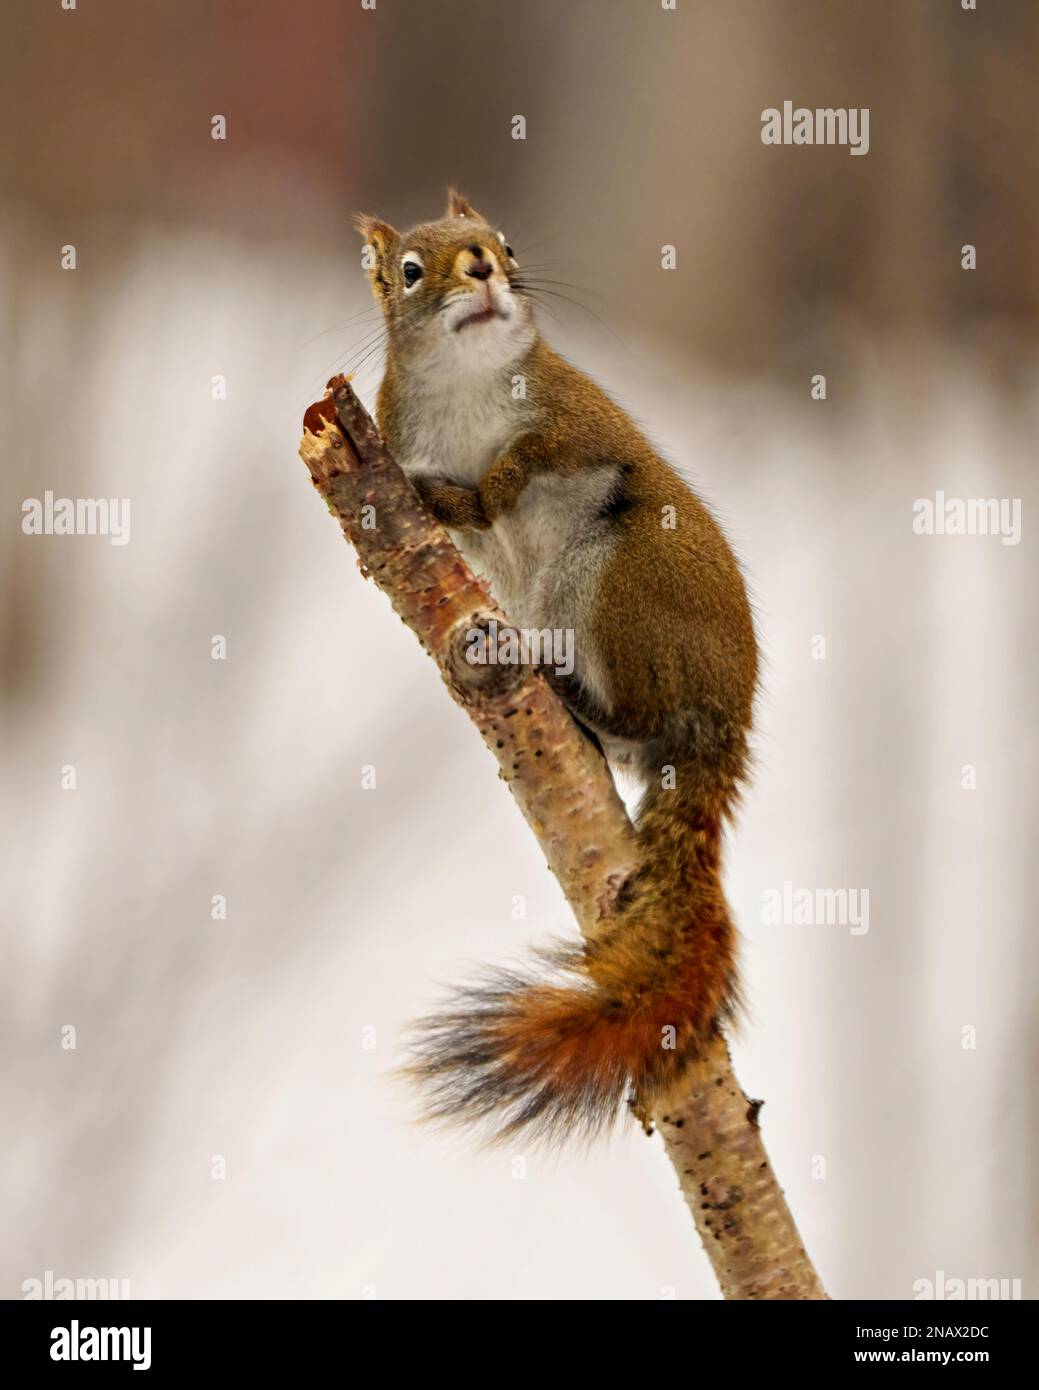 Eichhörnchen aus nächster Nähe, klettern auf einen Zweig und blicken in Richtung des Himmels mit einem weißen, verschwommenen Hintergrund in seiner Umgebung und Umgebung. Stockfoto